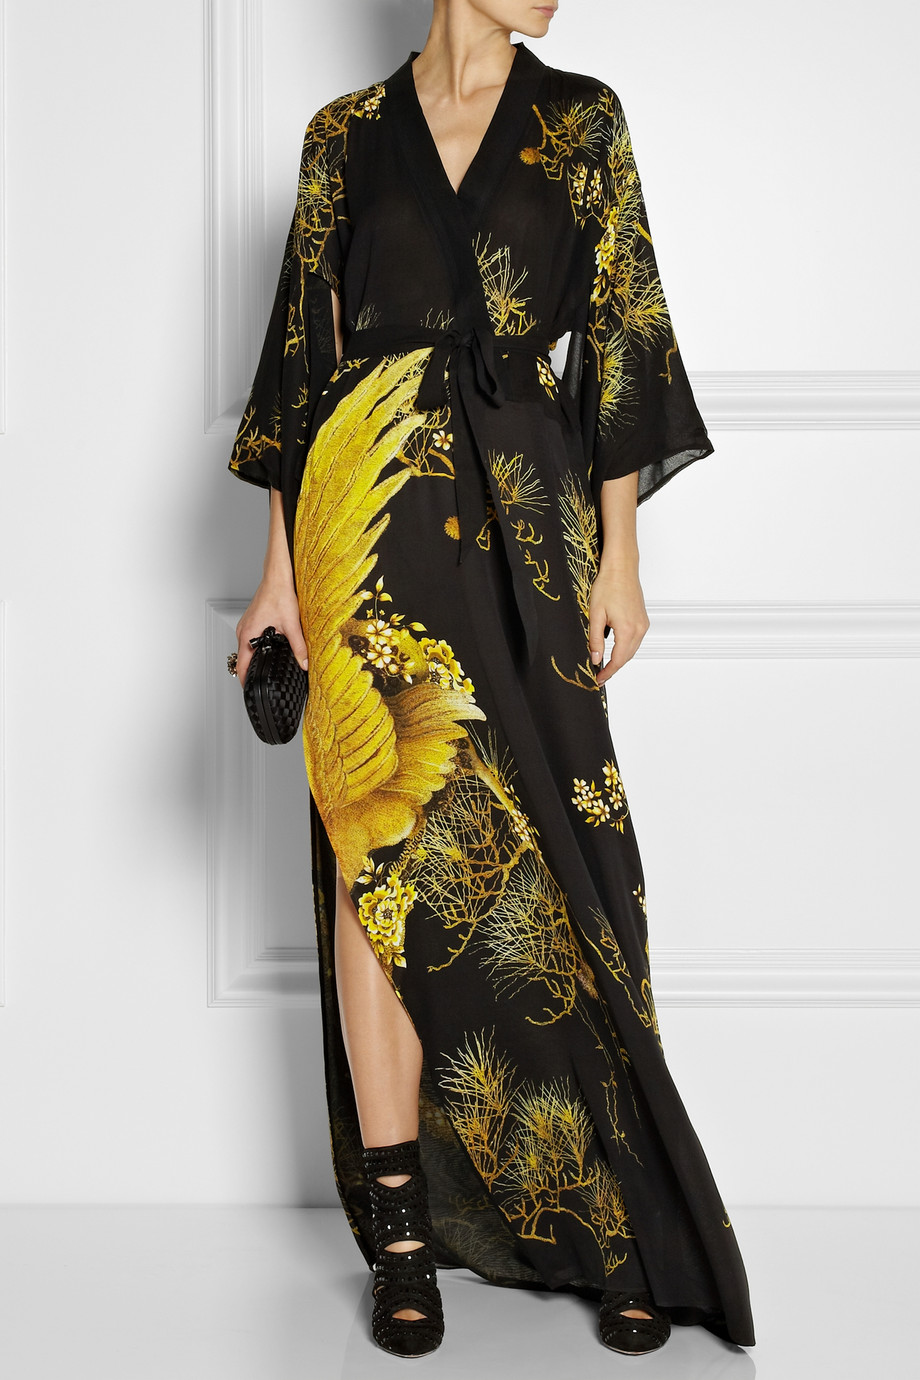 Roberto Cavalli Chimera Printed Silk Crepe De Chine Kimono style Dress in  Gold (Yellow) - Lyst